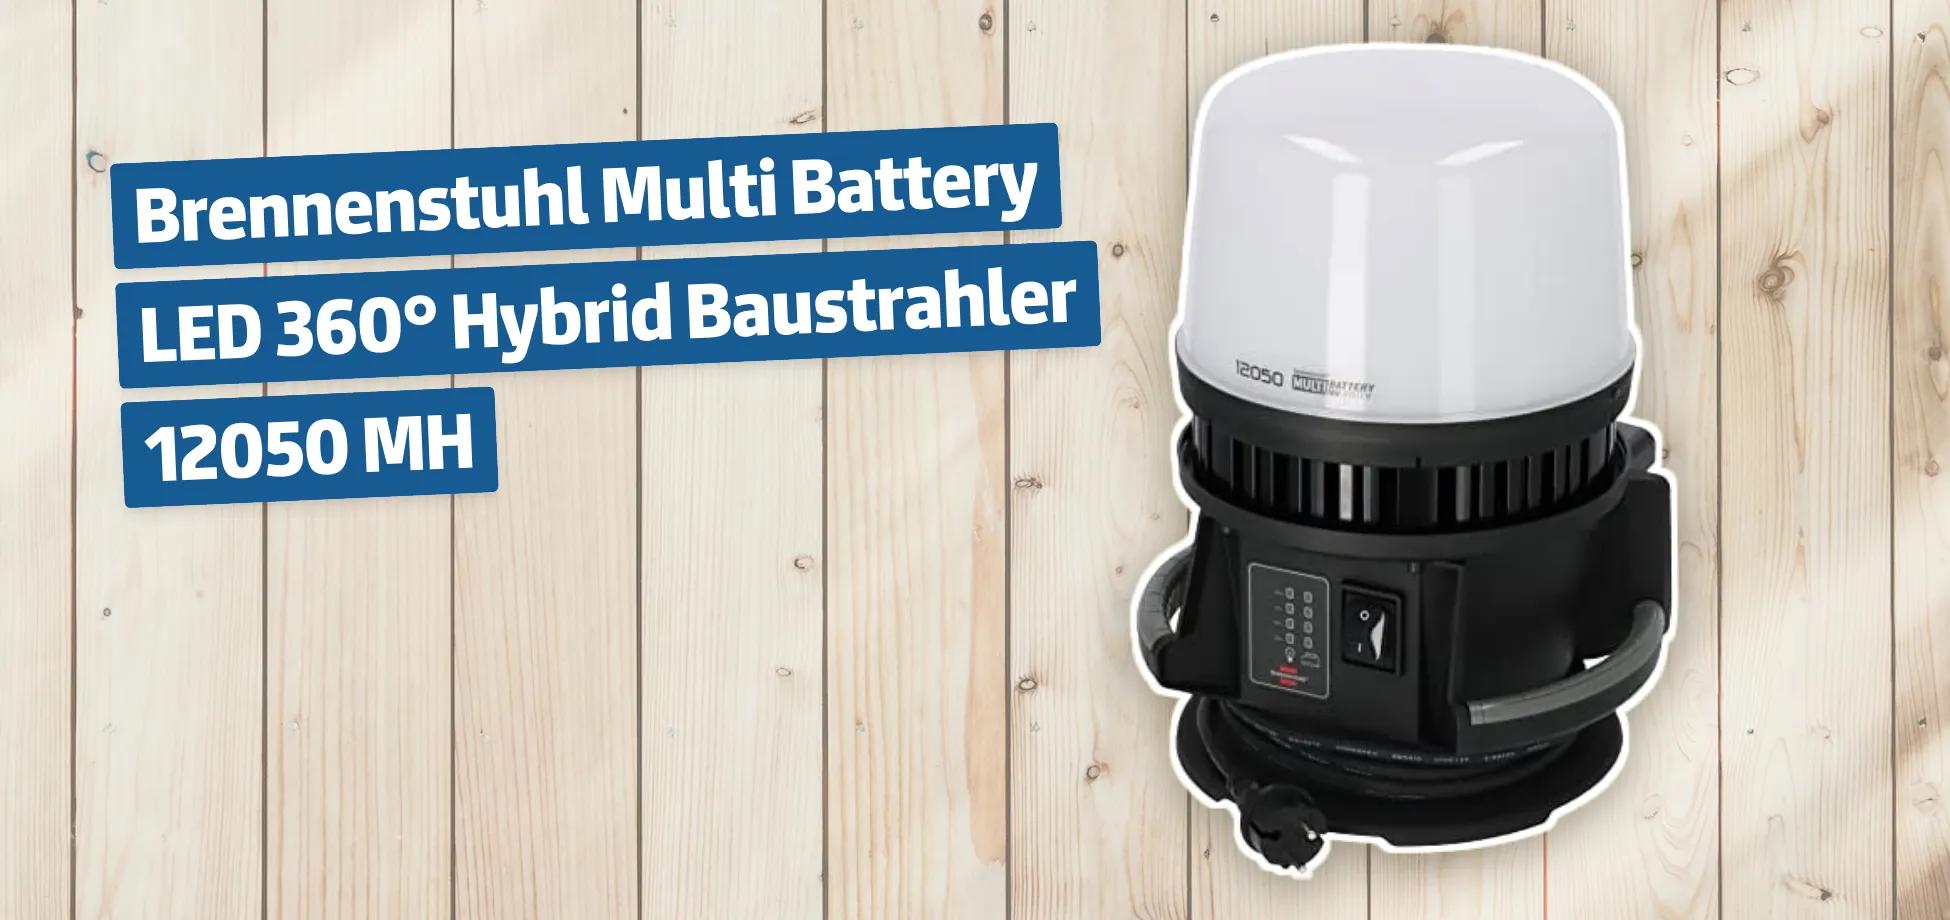 Brennenstuhl Multi Battery LED 360° Hybrid Baustrahler 12050 MH